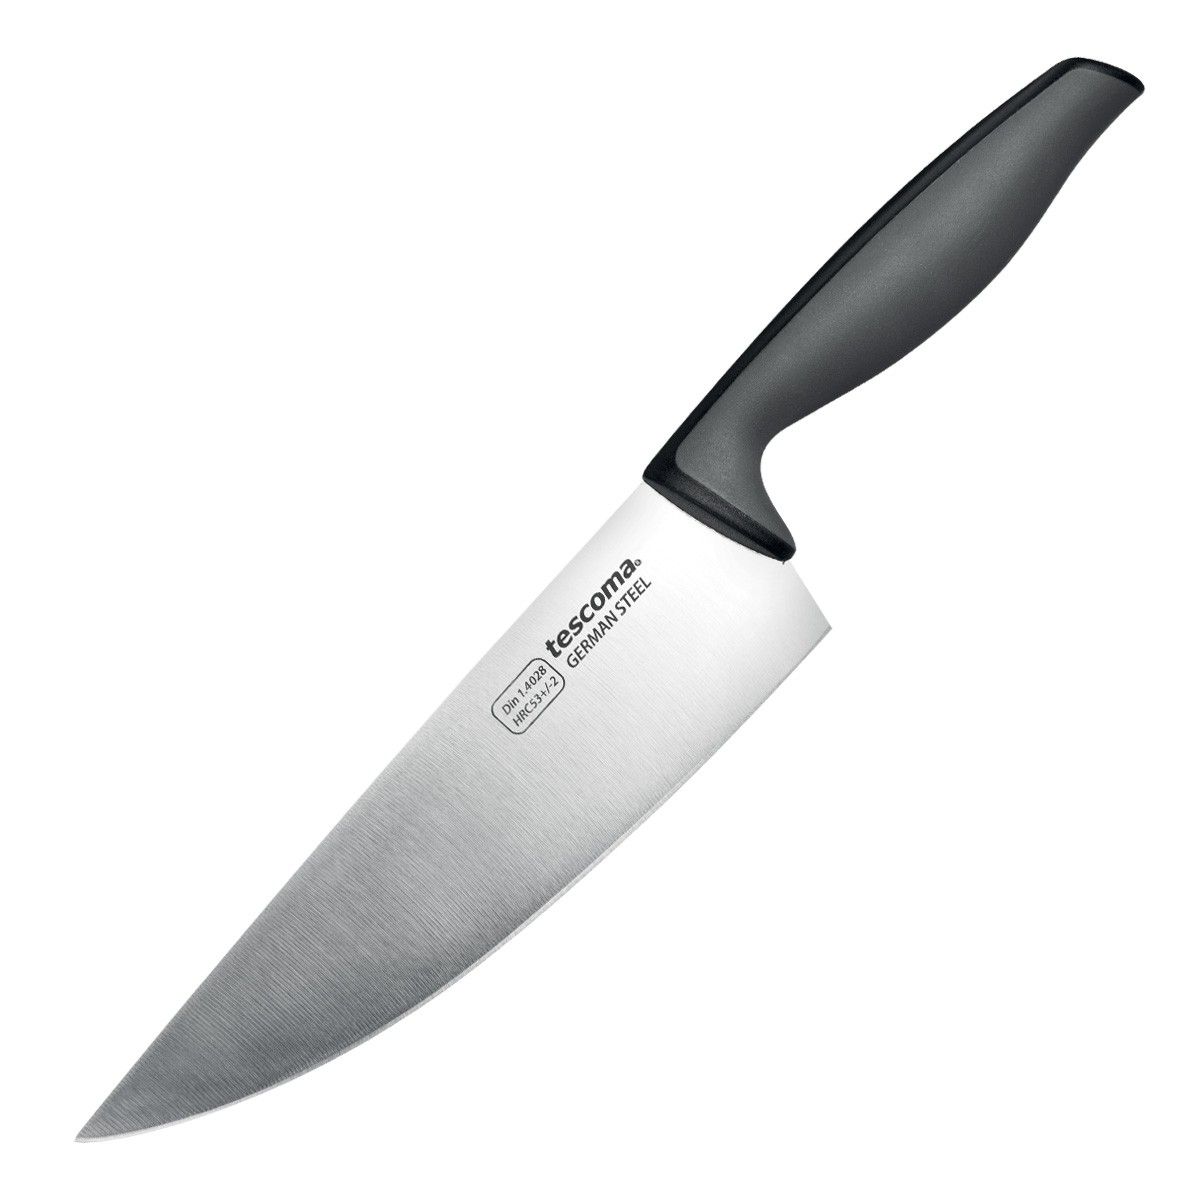 Nóż kuchenny PRECIOSO 18 cm